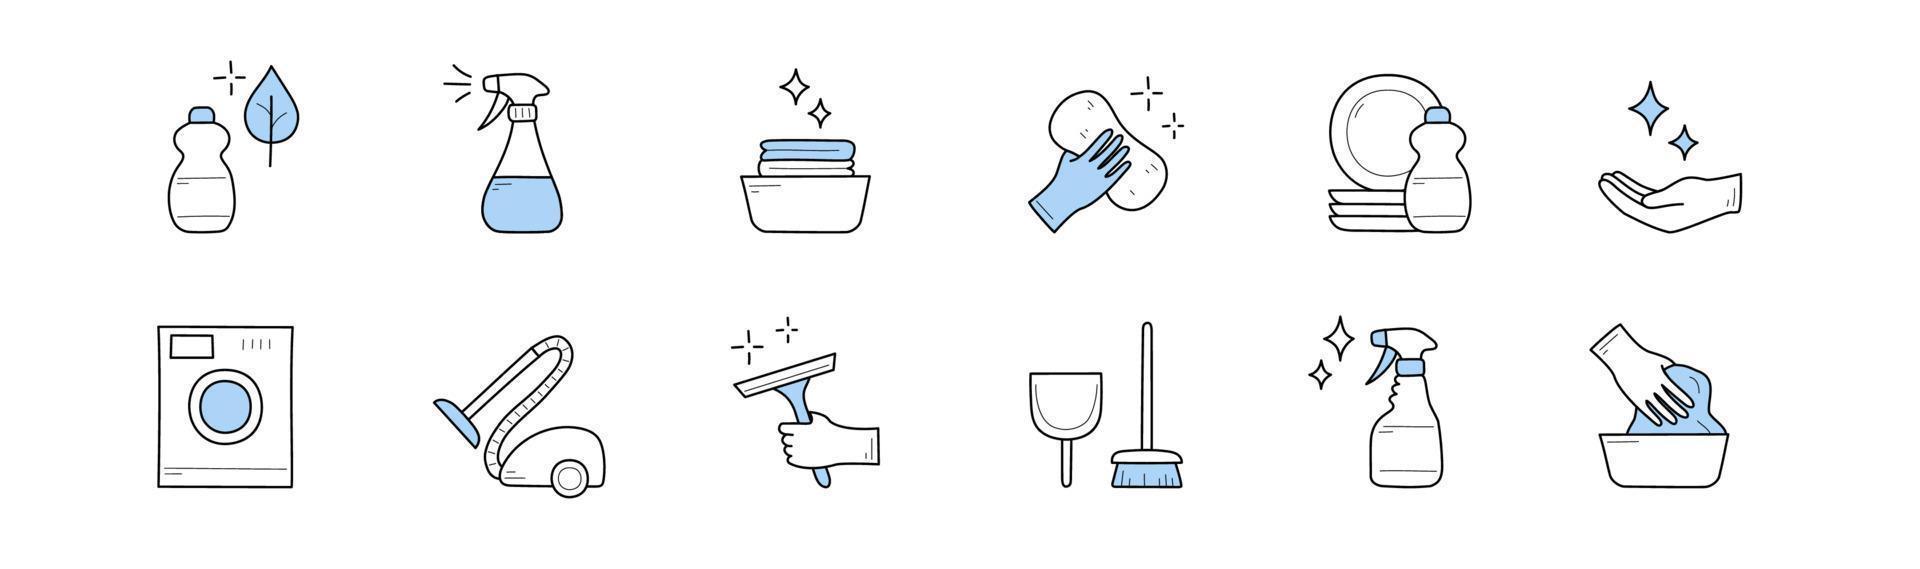 ensemble d'icônes de doodle de nettoyage et de ménage, signes vecteur